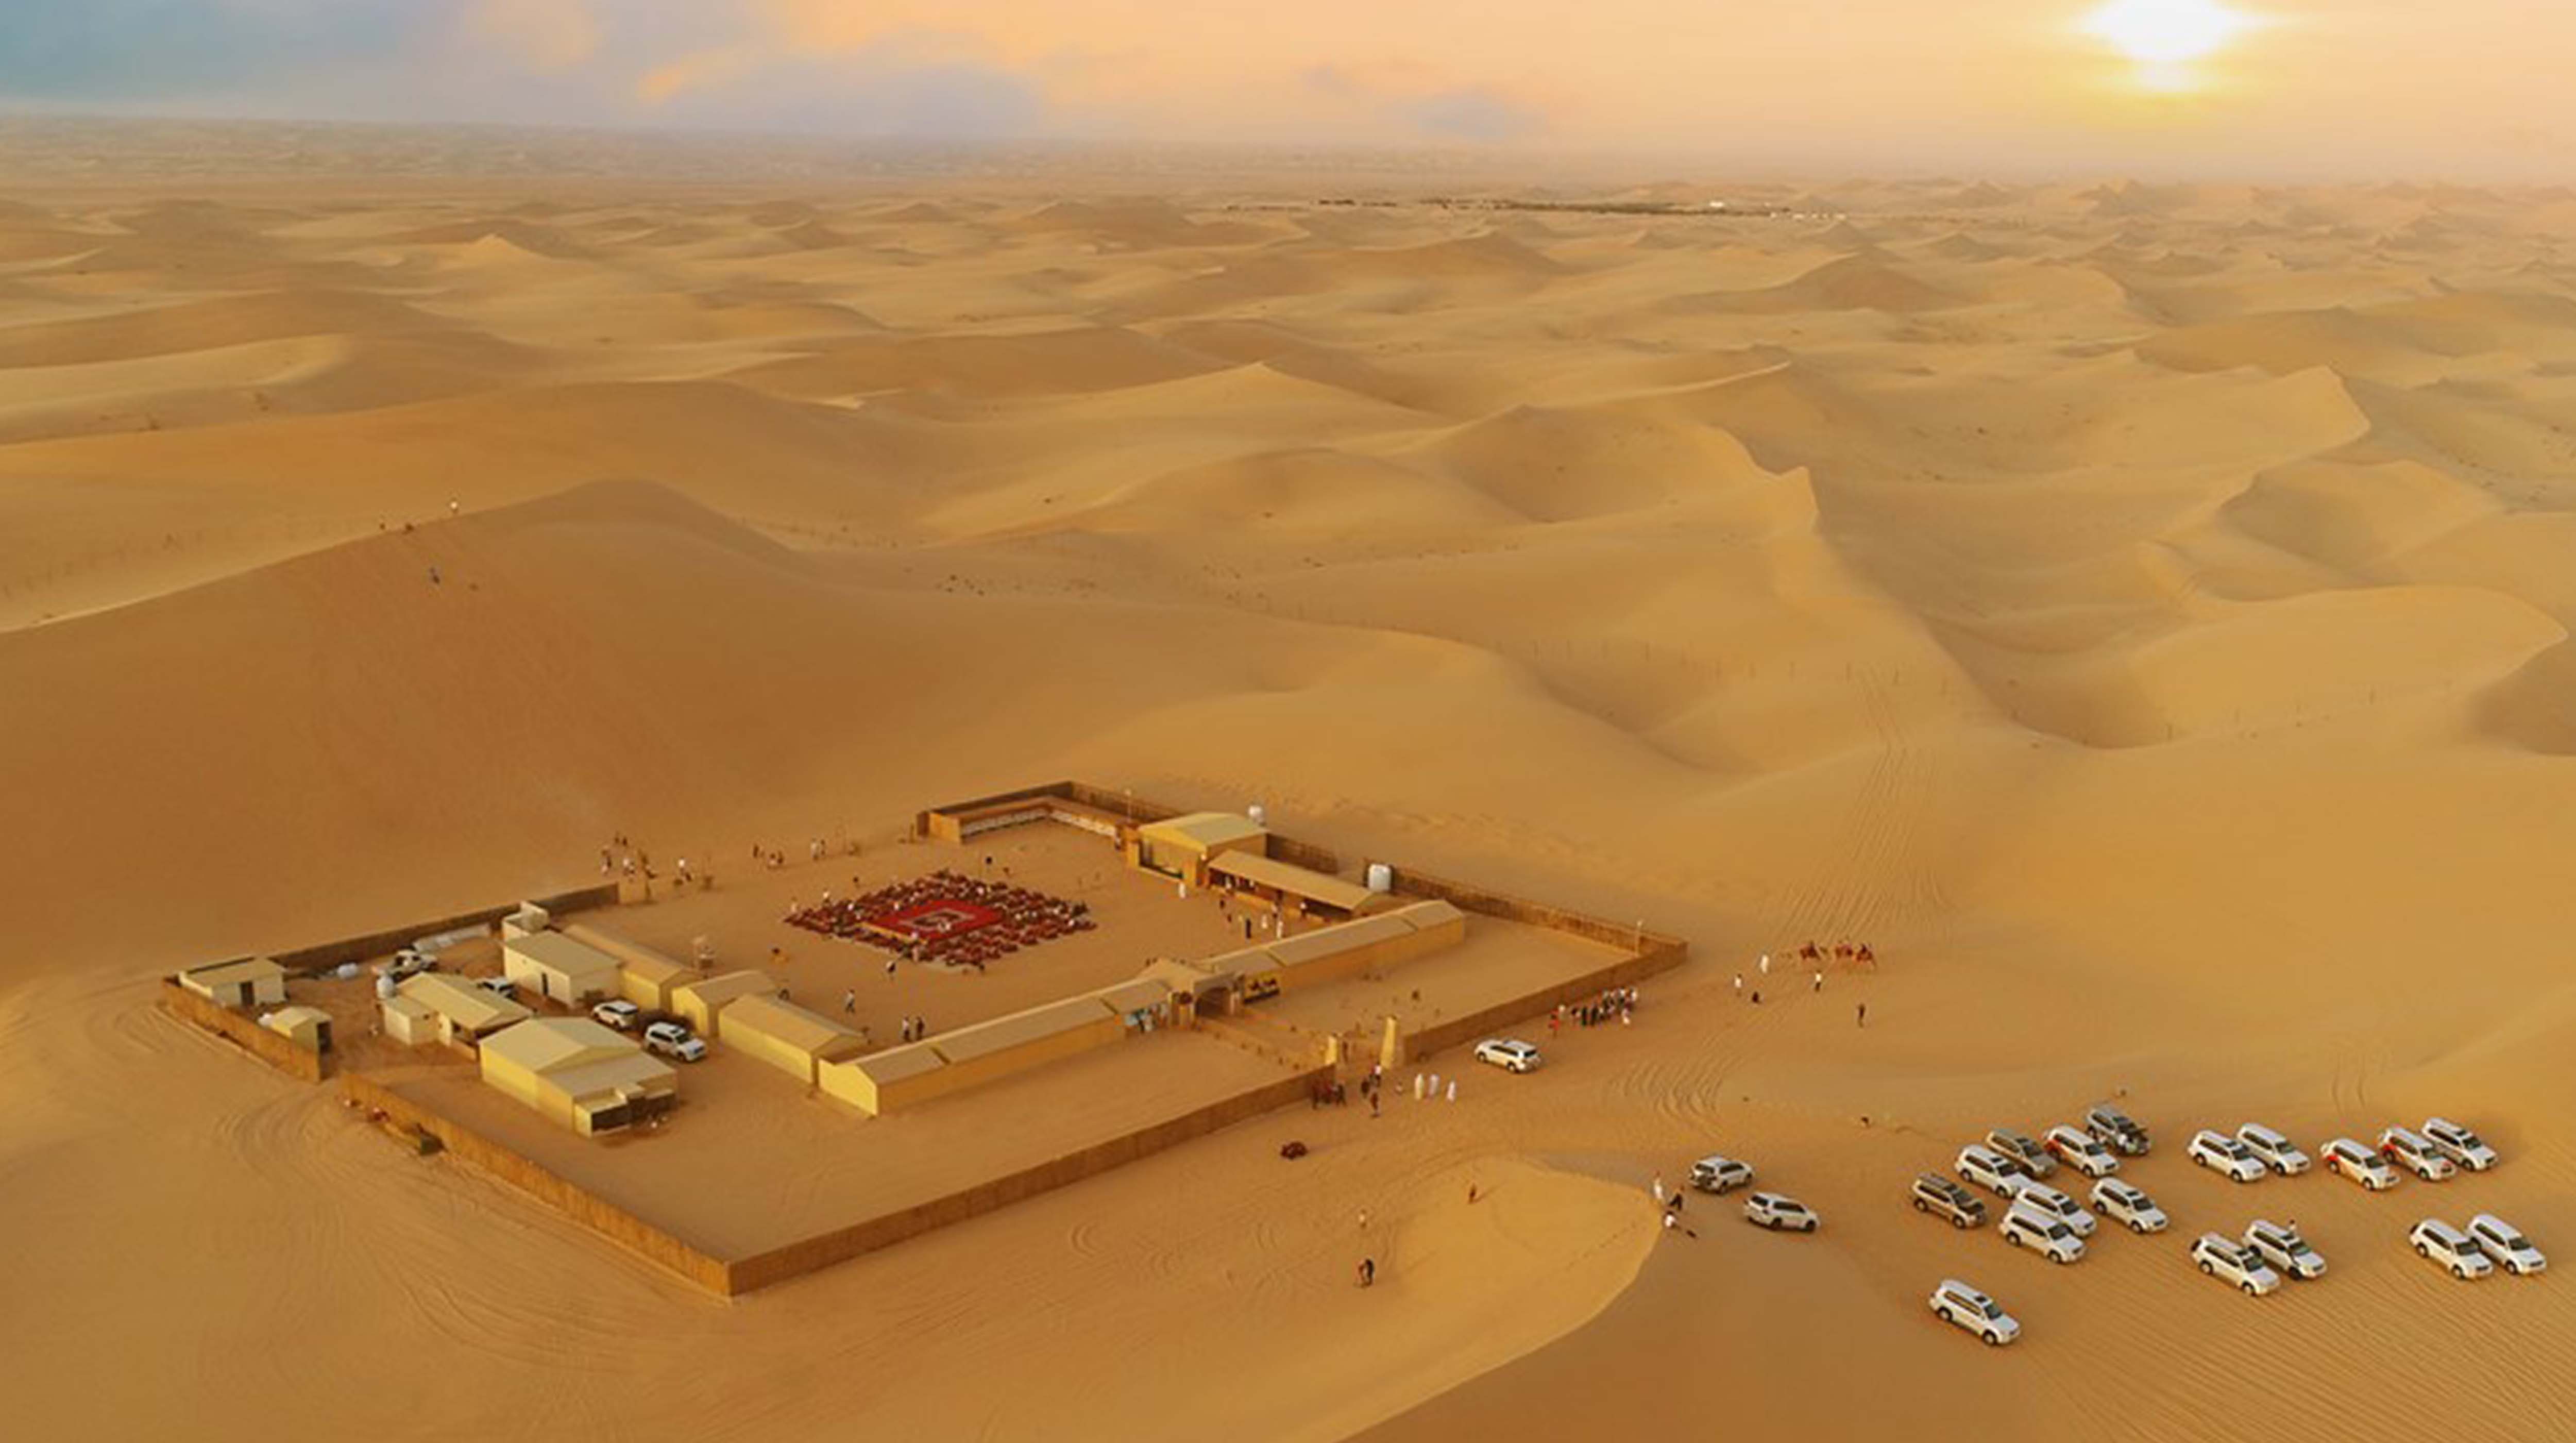 4. Beduińskie życie na pustyni